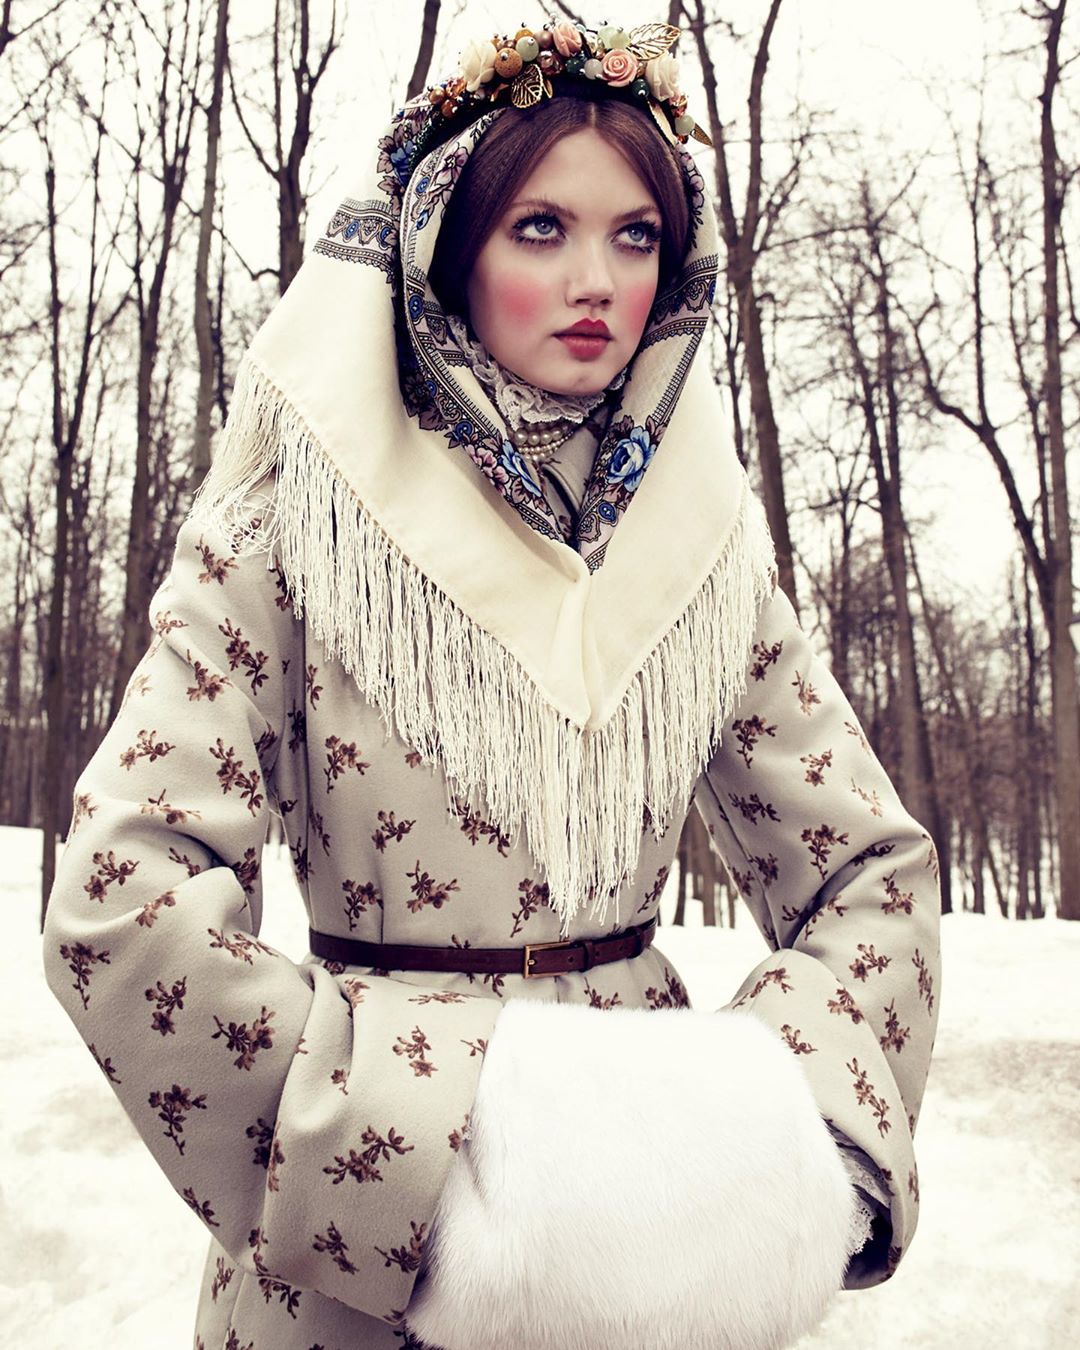 Voguejapan ウィンターホリデーシーズンぴったりなファッションストーリーのアーカイブをお届け 13年12月号からは ロシアのプリンセス アナスタシアのグラマラスで魅惑的 Wacoca Japan People Life Style